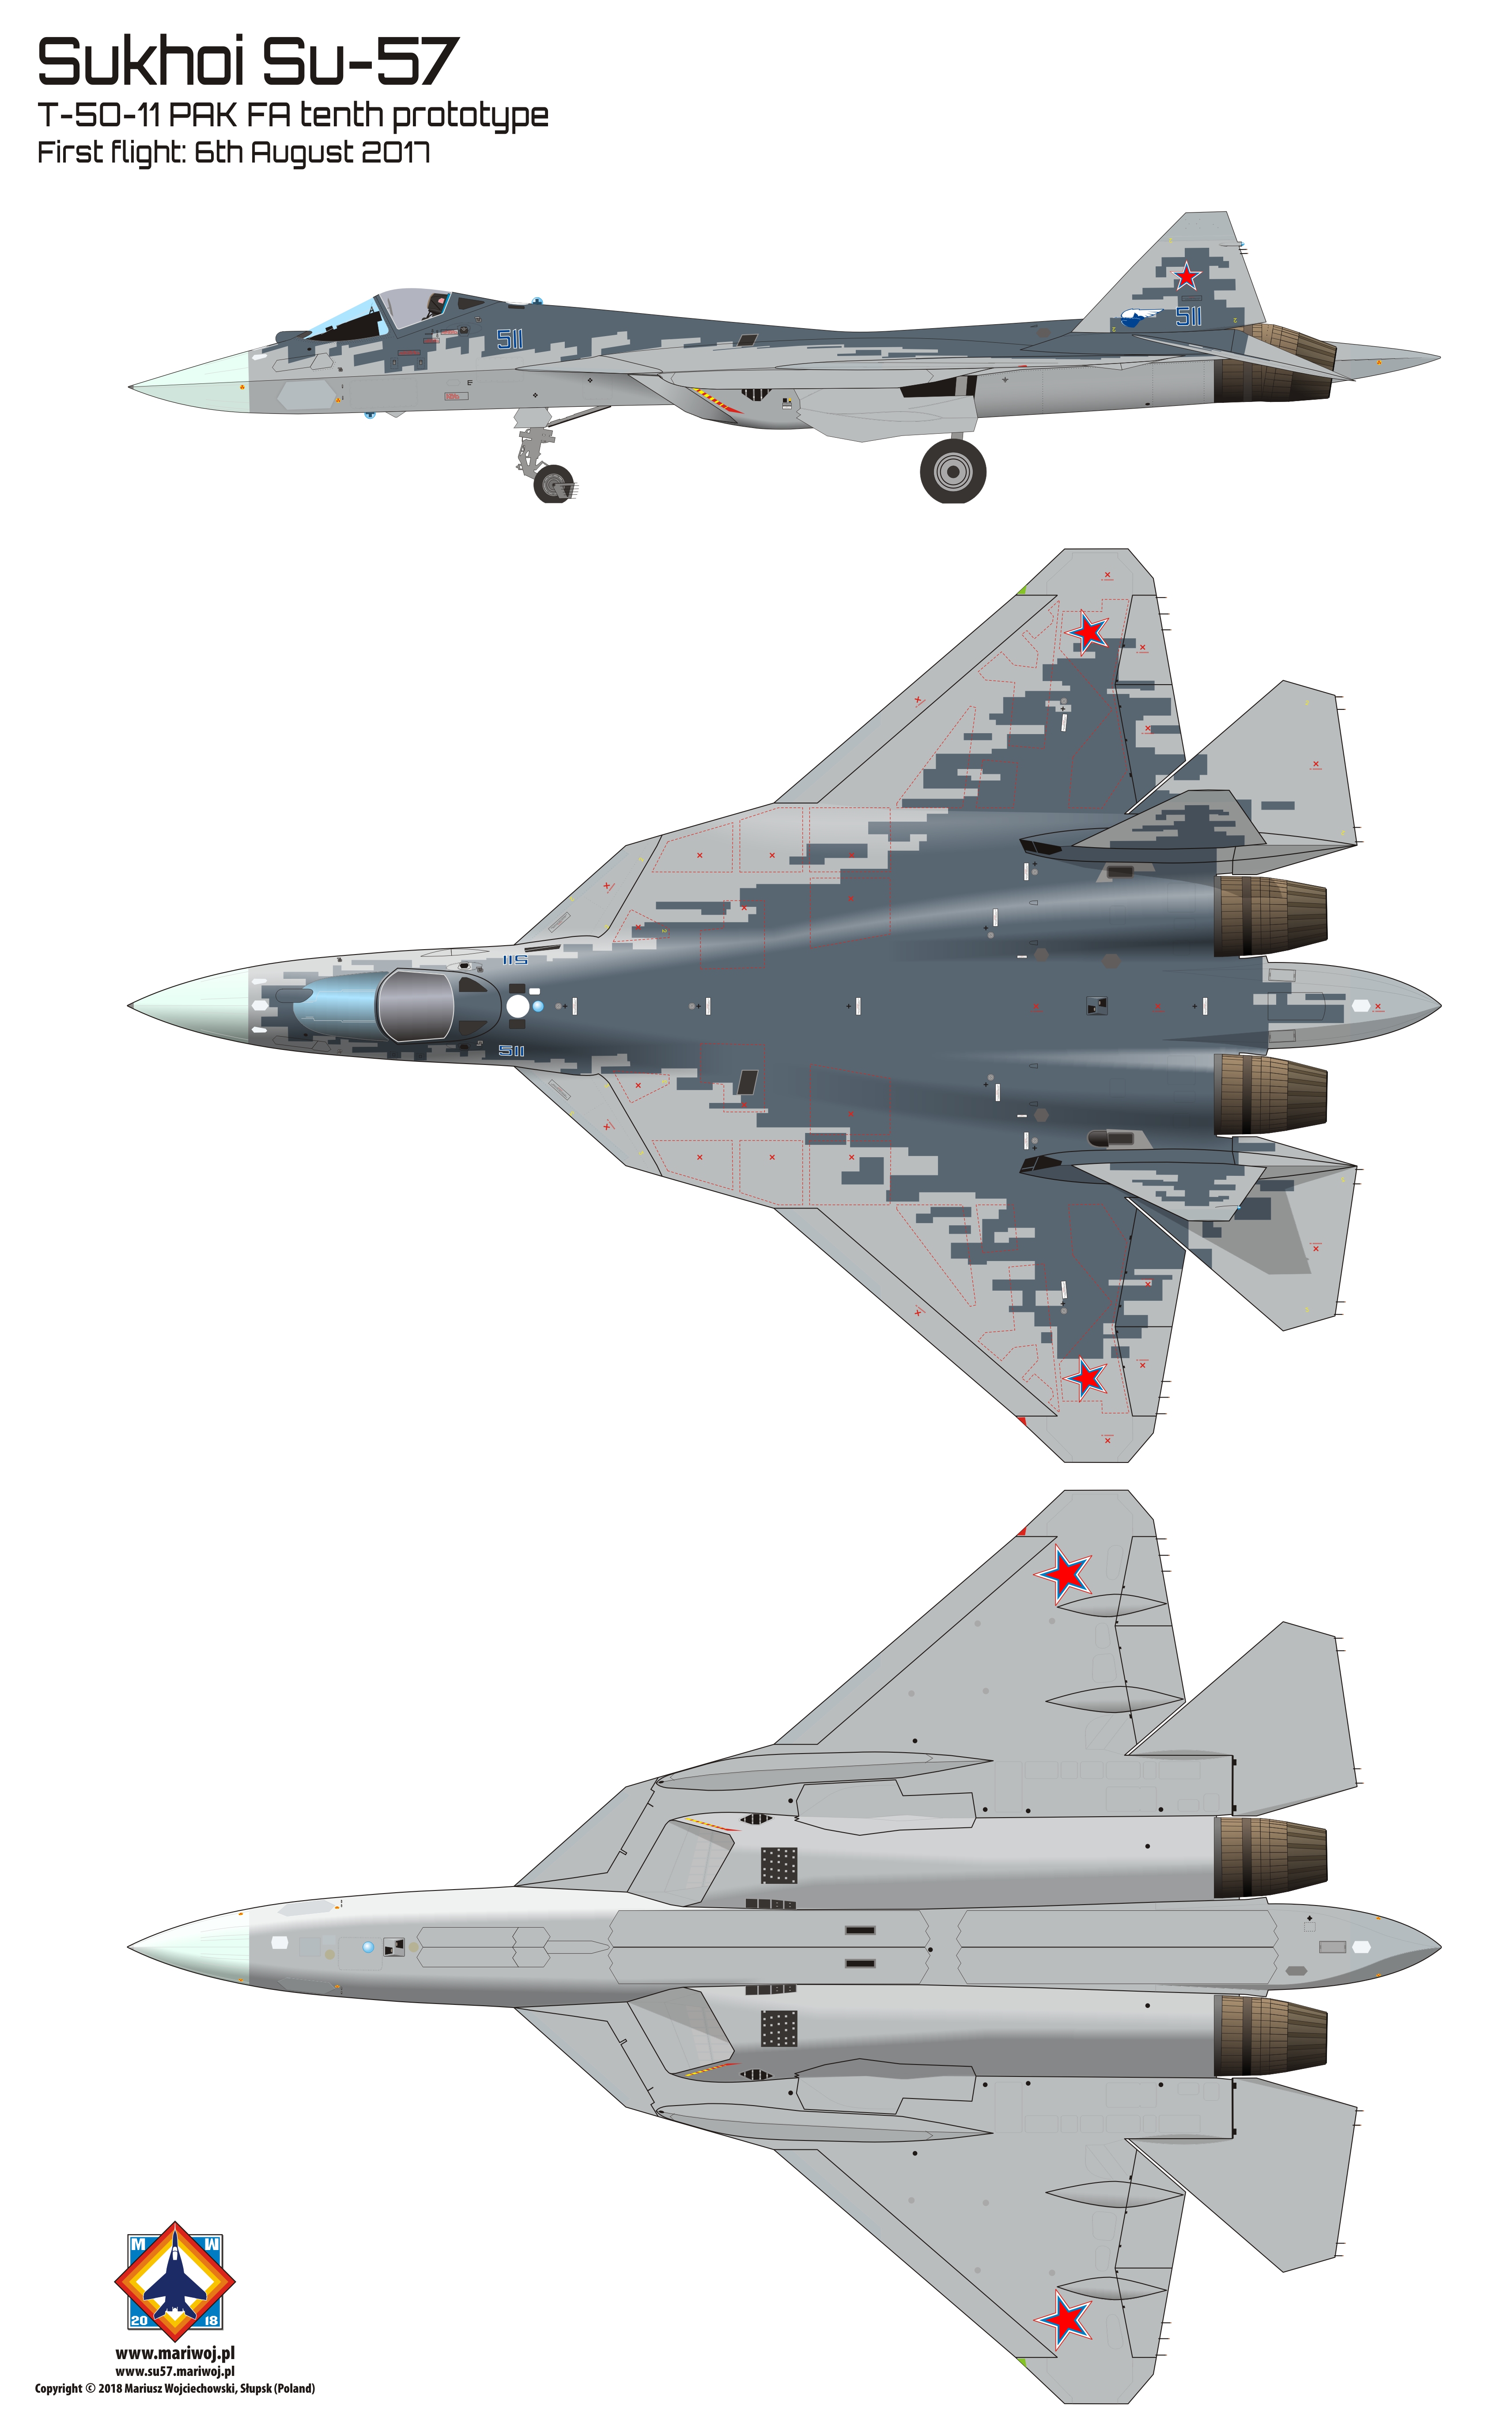 苏-57隐形战斗机三视图(图片来自bing)